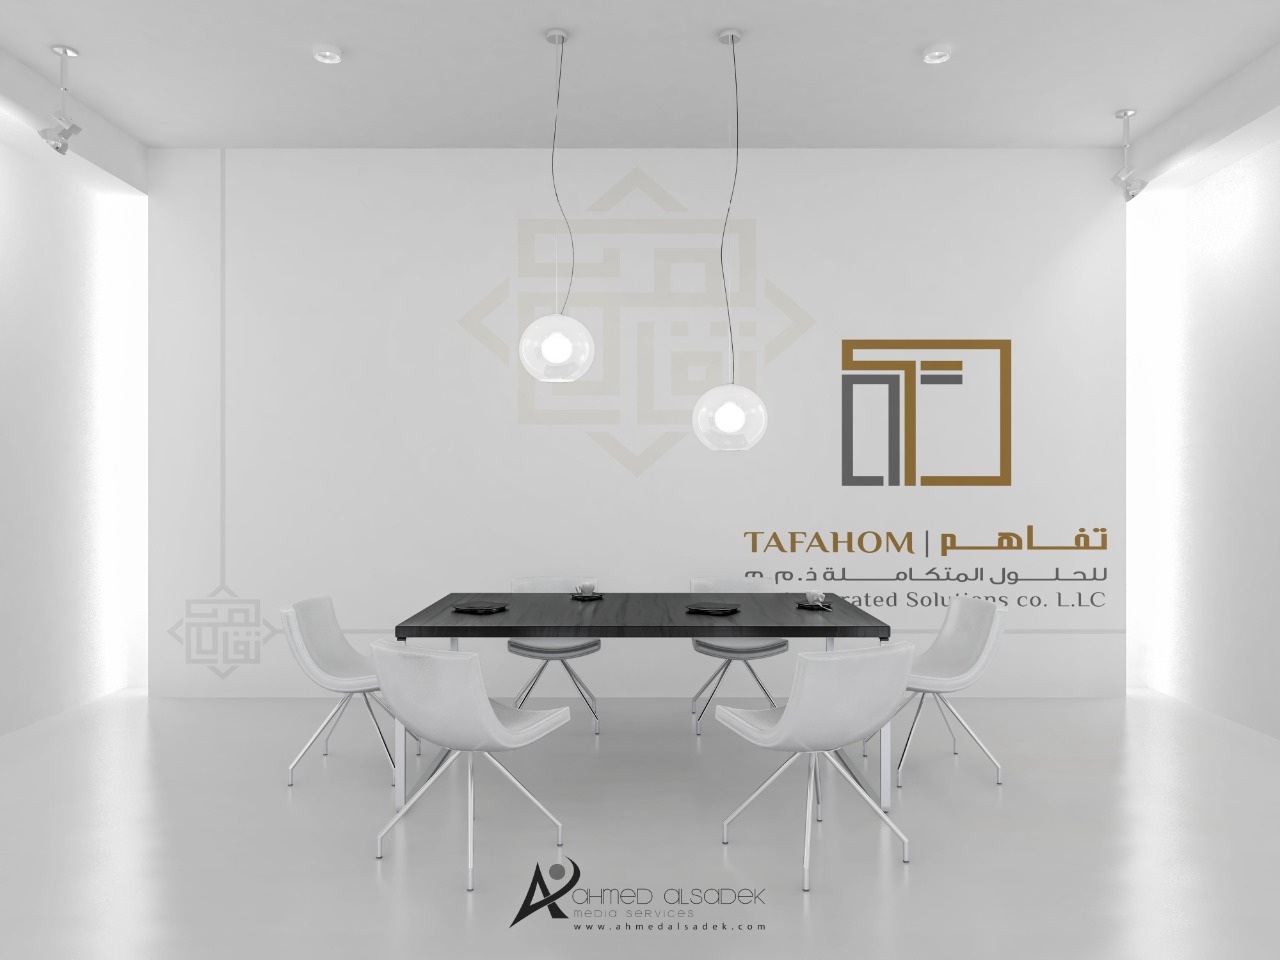 تصميم هوية شركة تفاهم للحلول المتكاملة في دبي الامارات 6